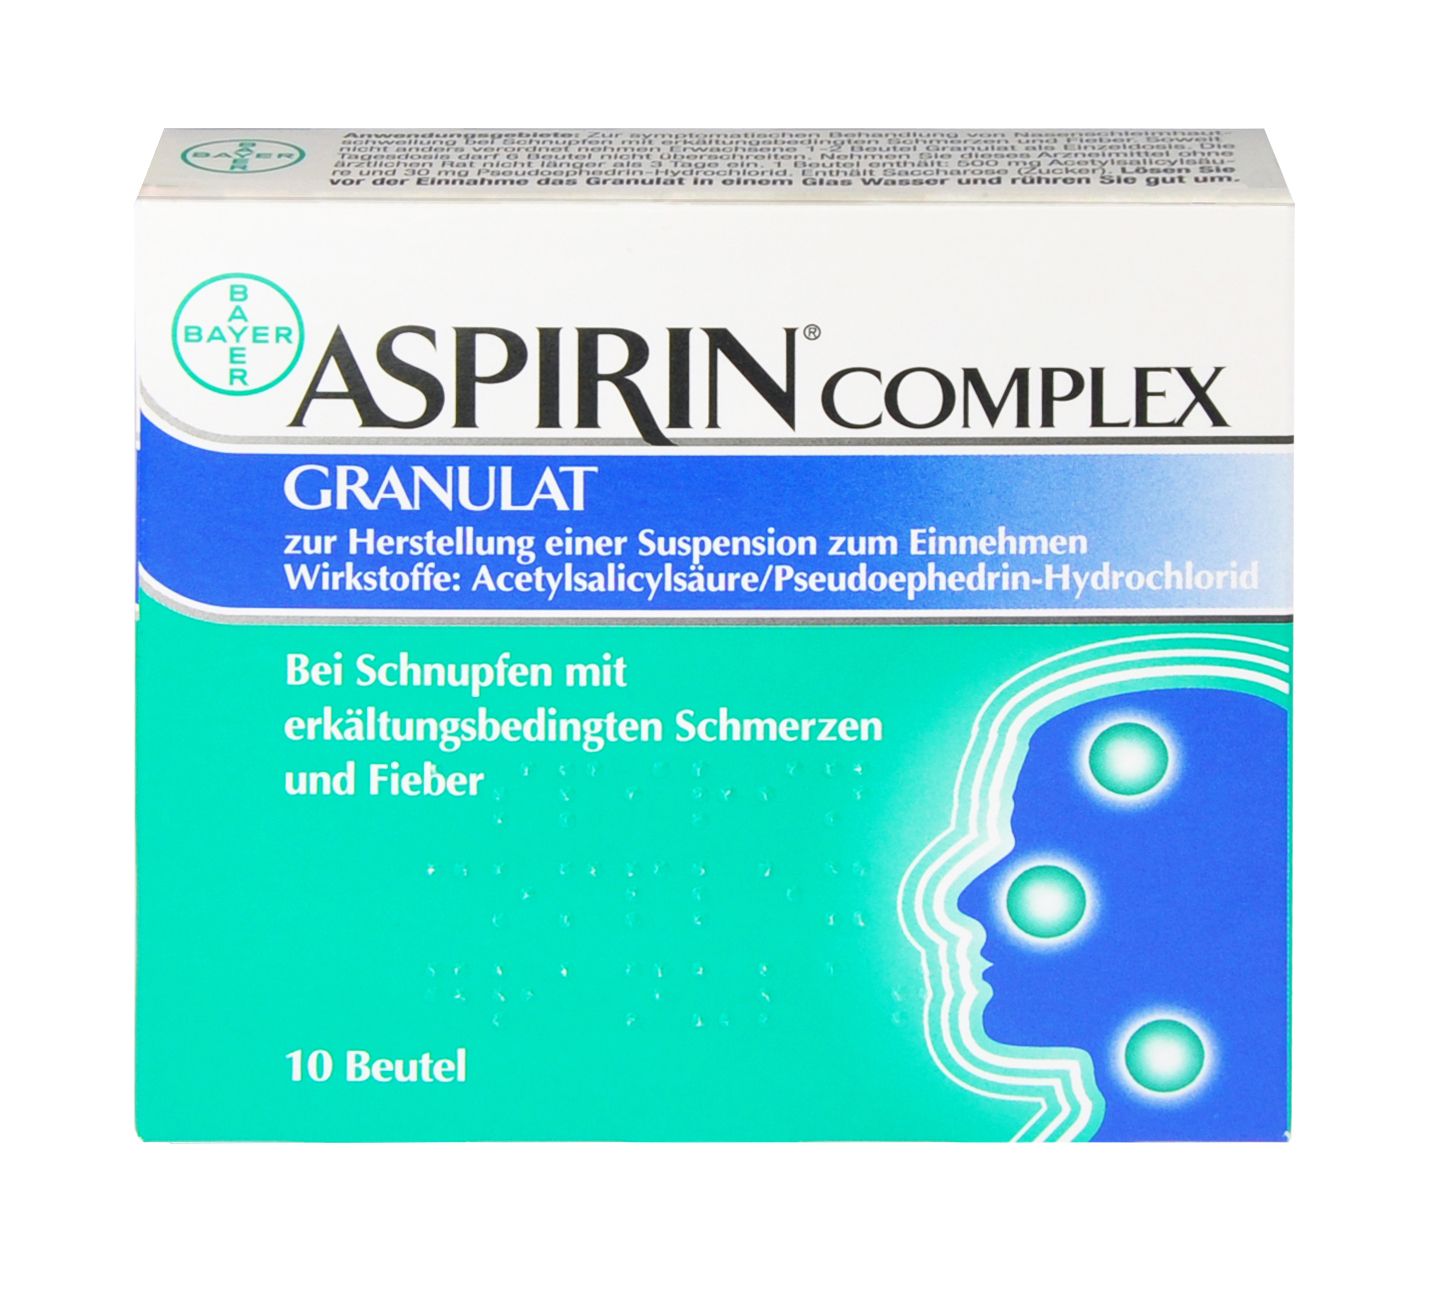 Abbildung Aspirin Complex 500 mg/30 mg - Granulat zur Herstellung einer Suspension zum Einnehmen